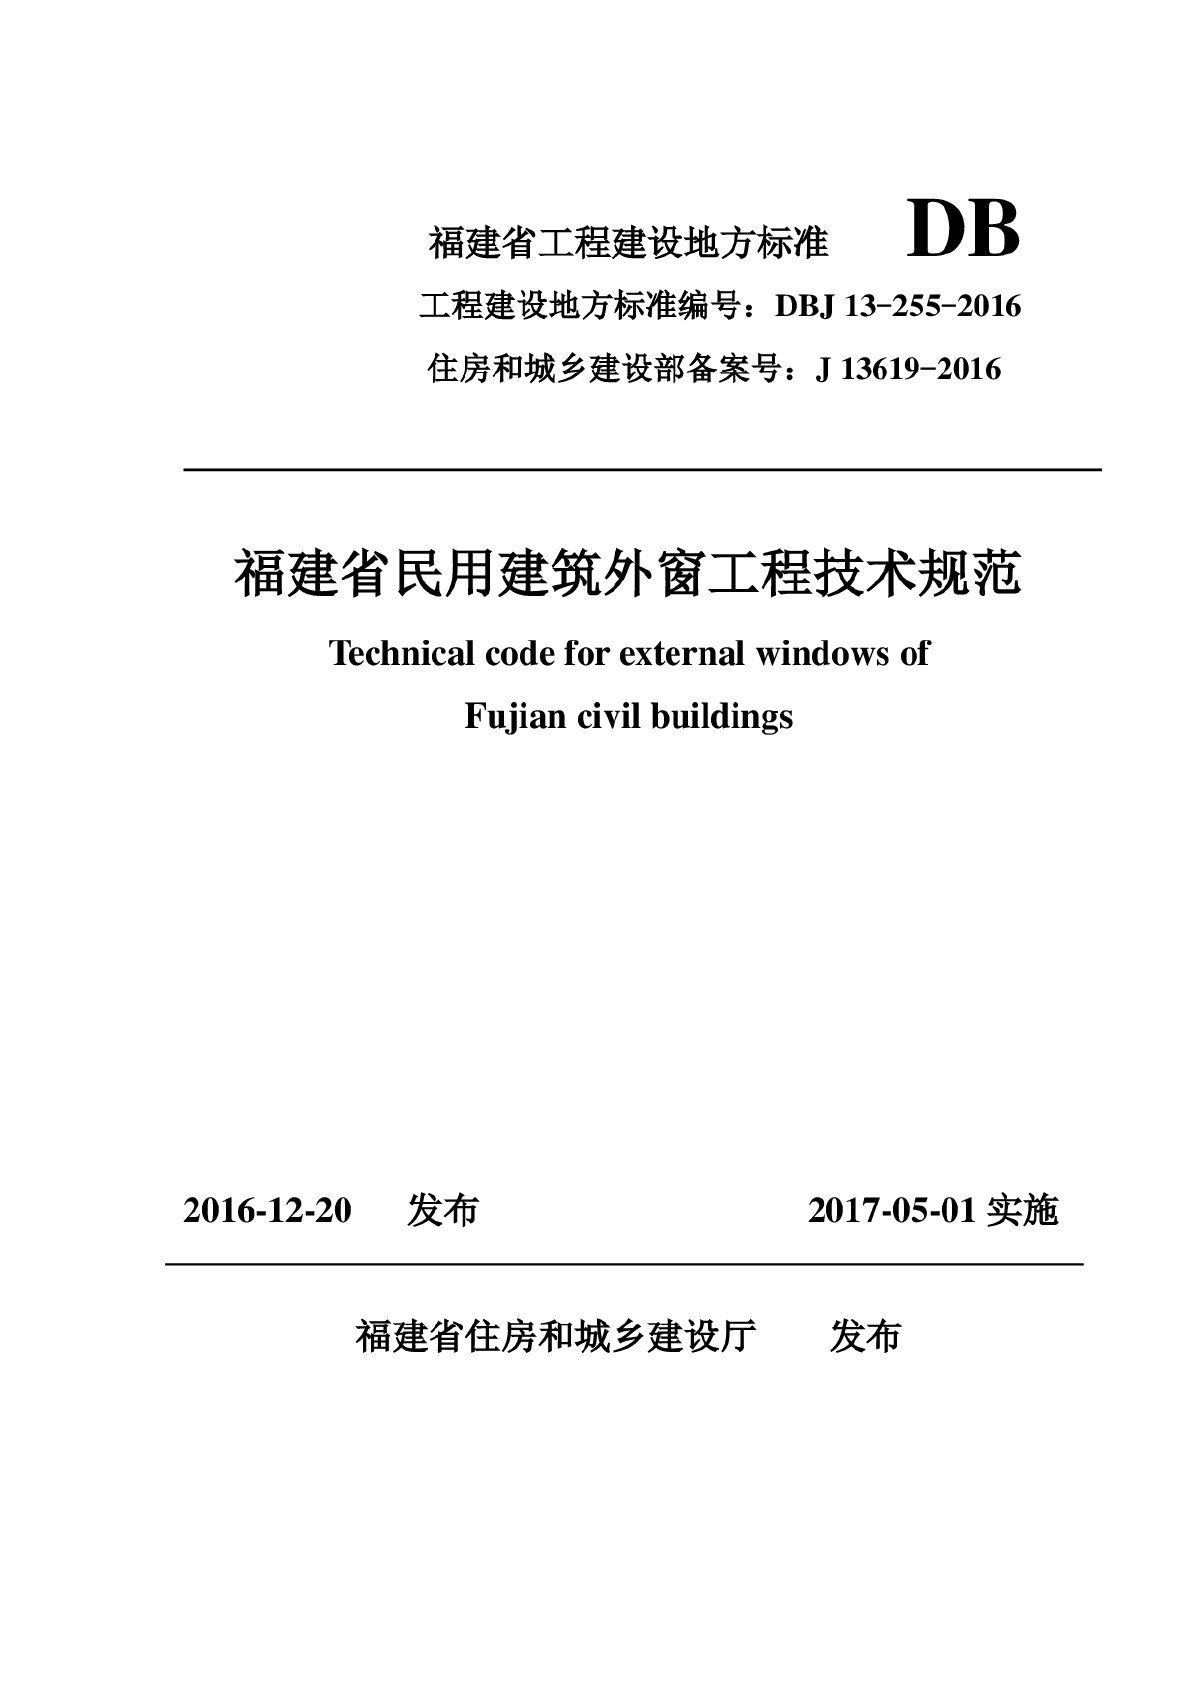 DBJ 13-255-2016福建省民用建筑外窗工程技术规范